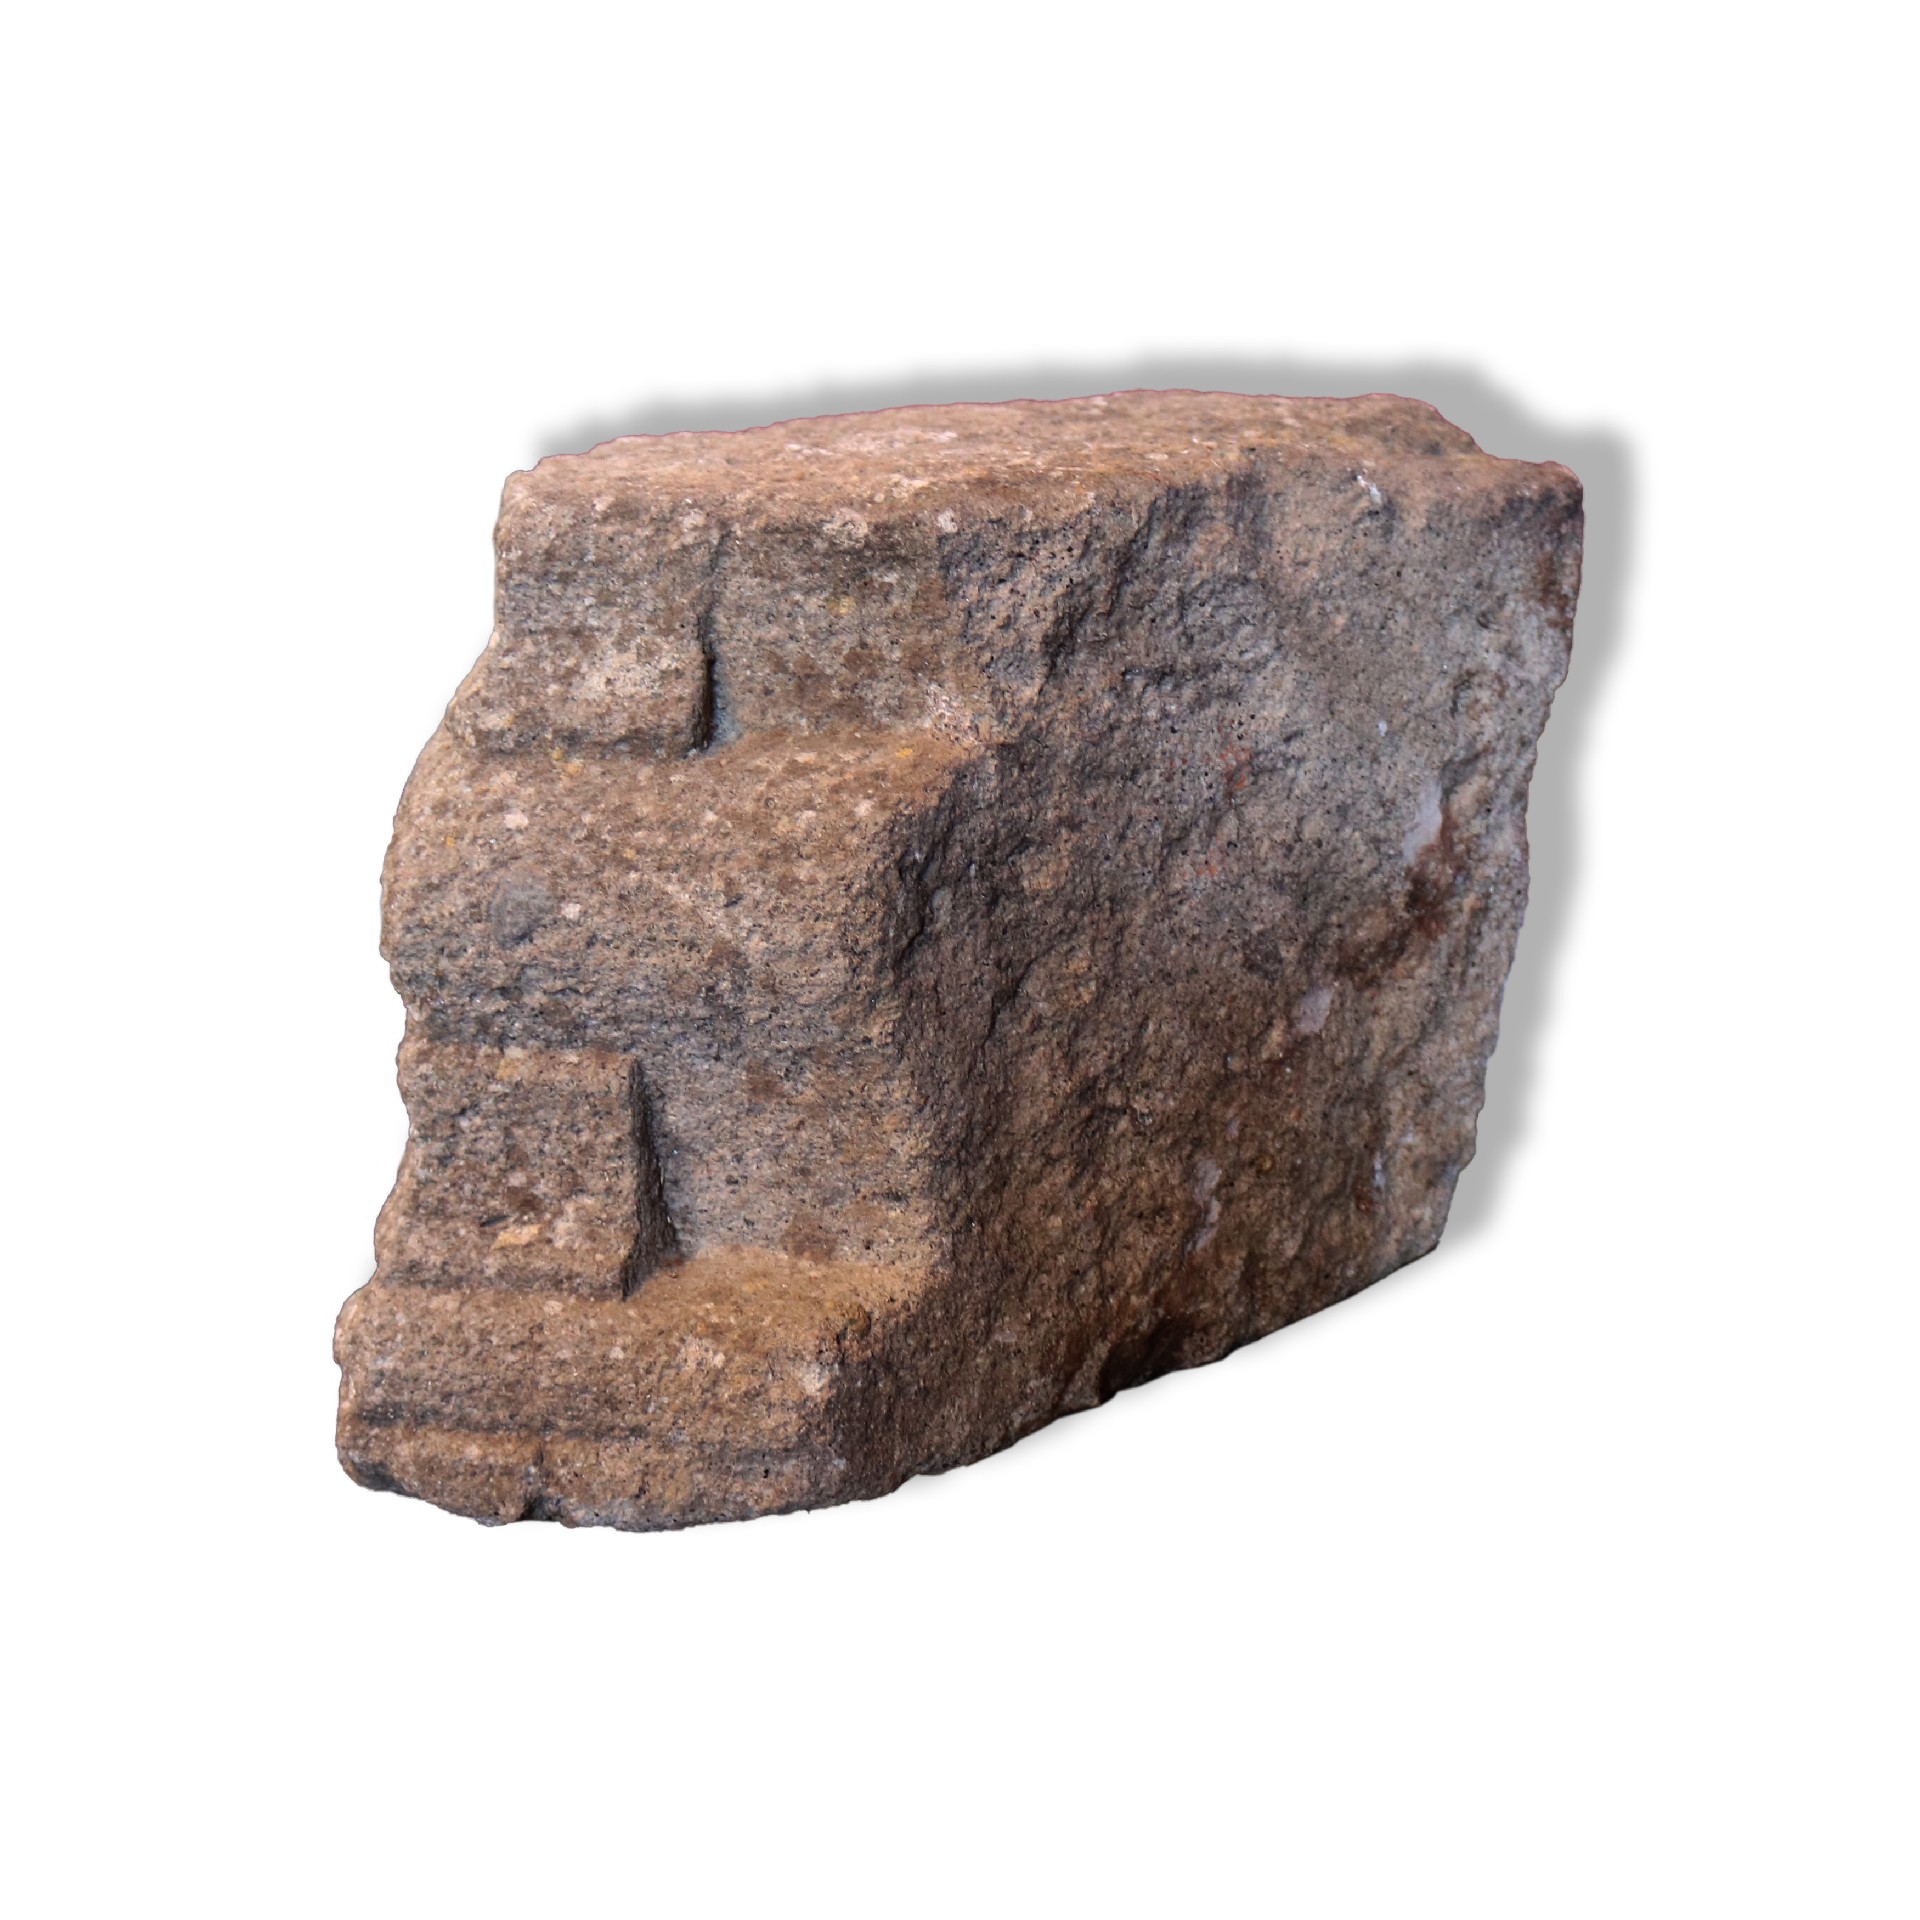 Antica mensola in pietra.  - Mensole antiche - Architettura - Prodotti - Antichità Fiorillo